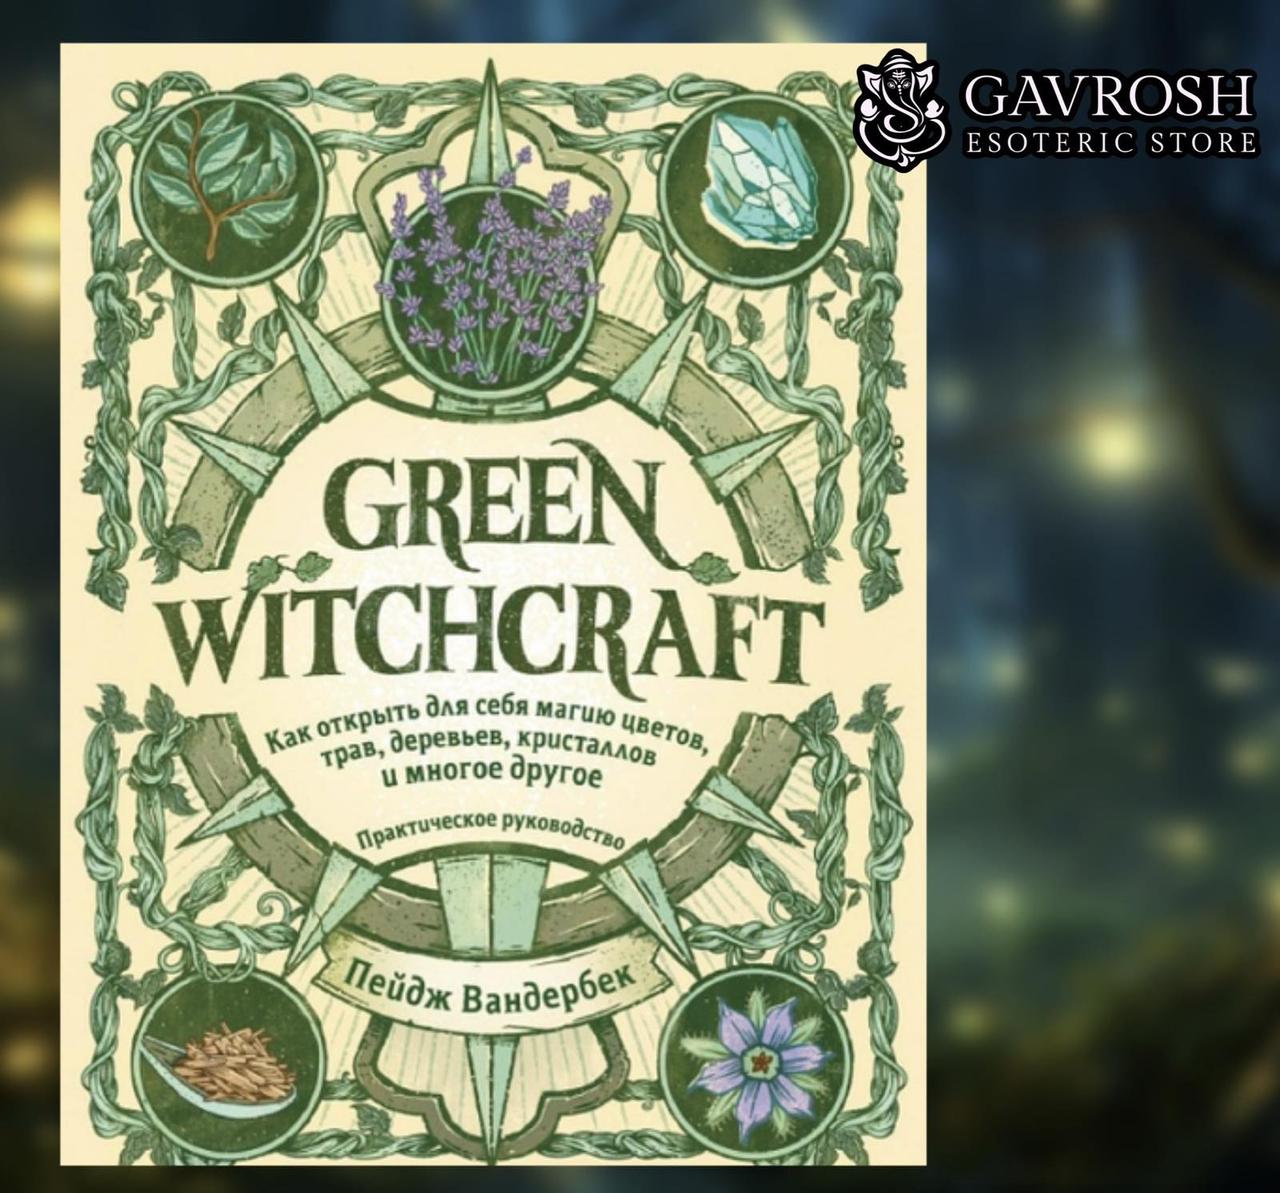 Green Witchcraft. Як відкрити для себе магію квітів, трав, дерев, кристалів та багато іншого. Пейдж